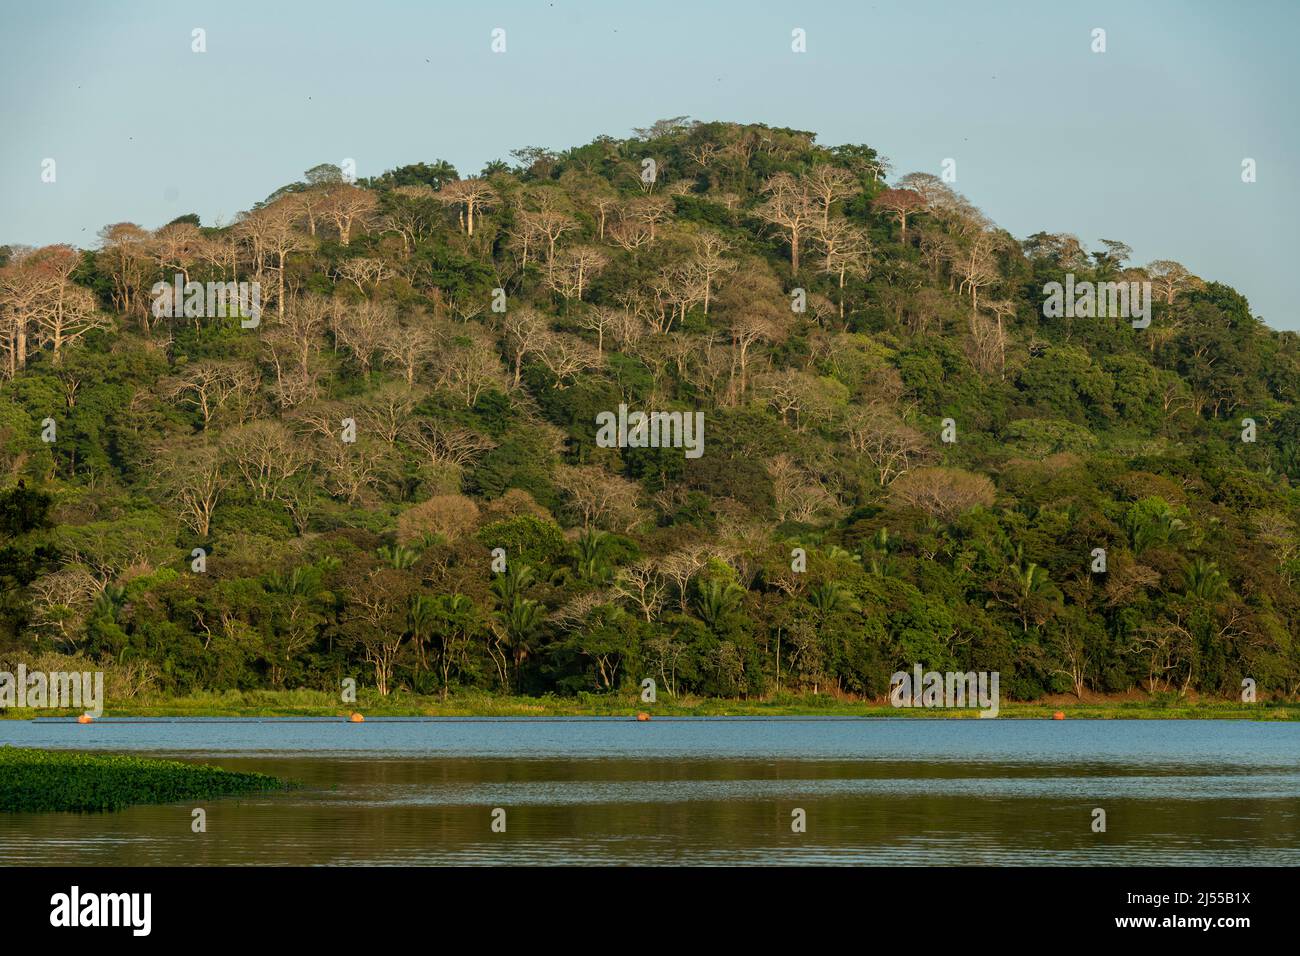 Selva tropical en el Lago Gatun, Canal de Panamá, Panamá, Centroamérica Foto de stock